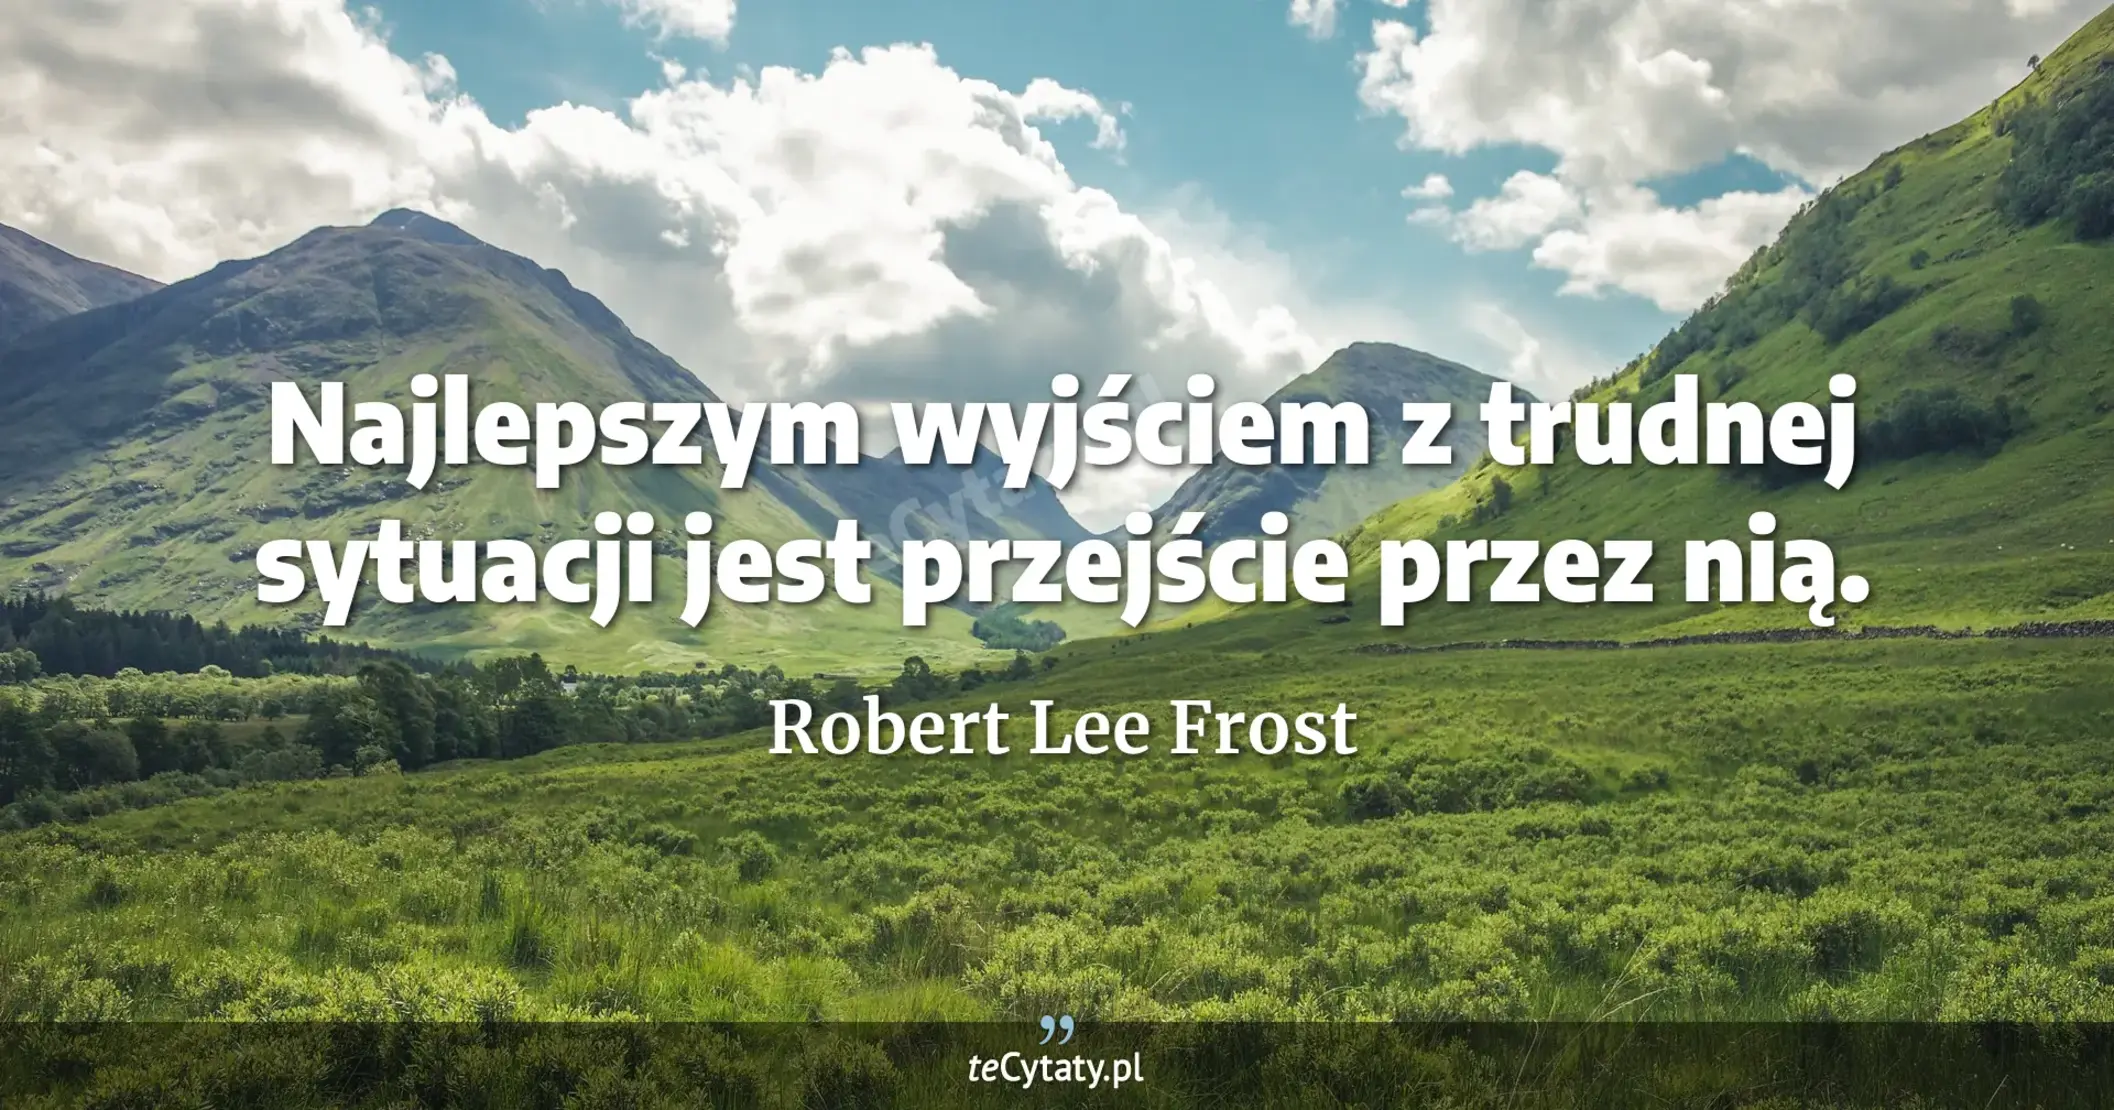 Najlepszym wyjściem z trudnej sytuacji jest przejście przez nią. - Robert Lee Frost